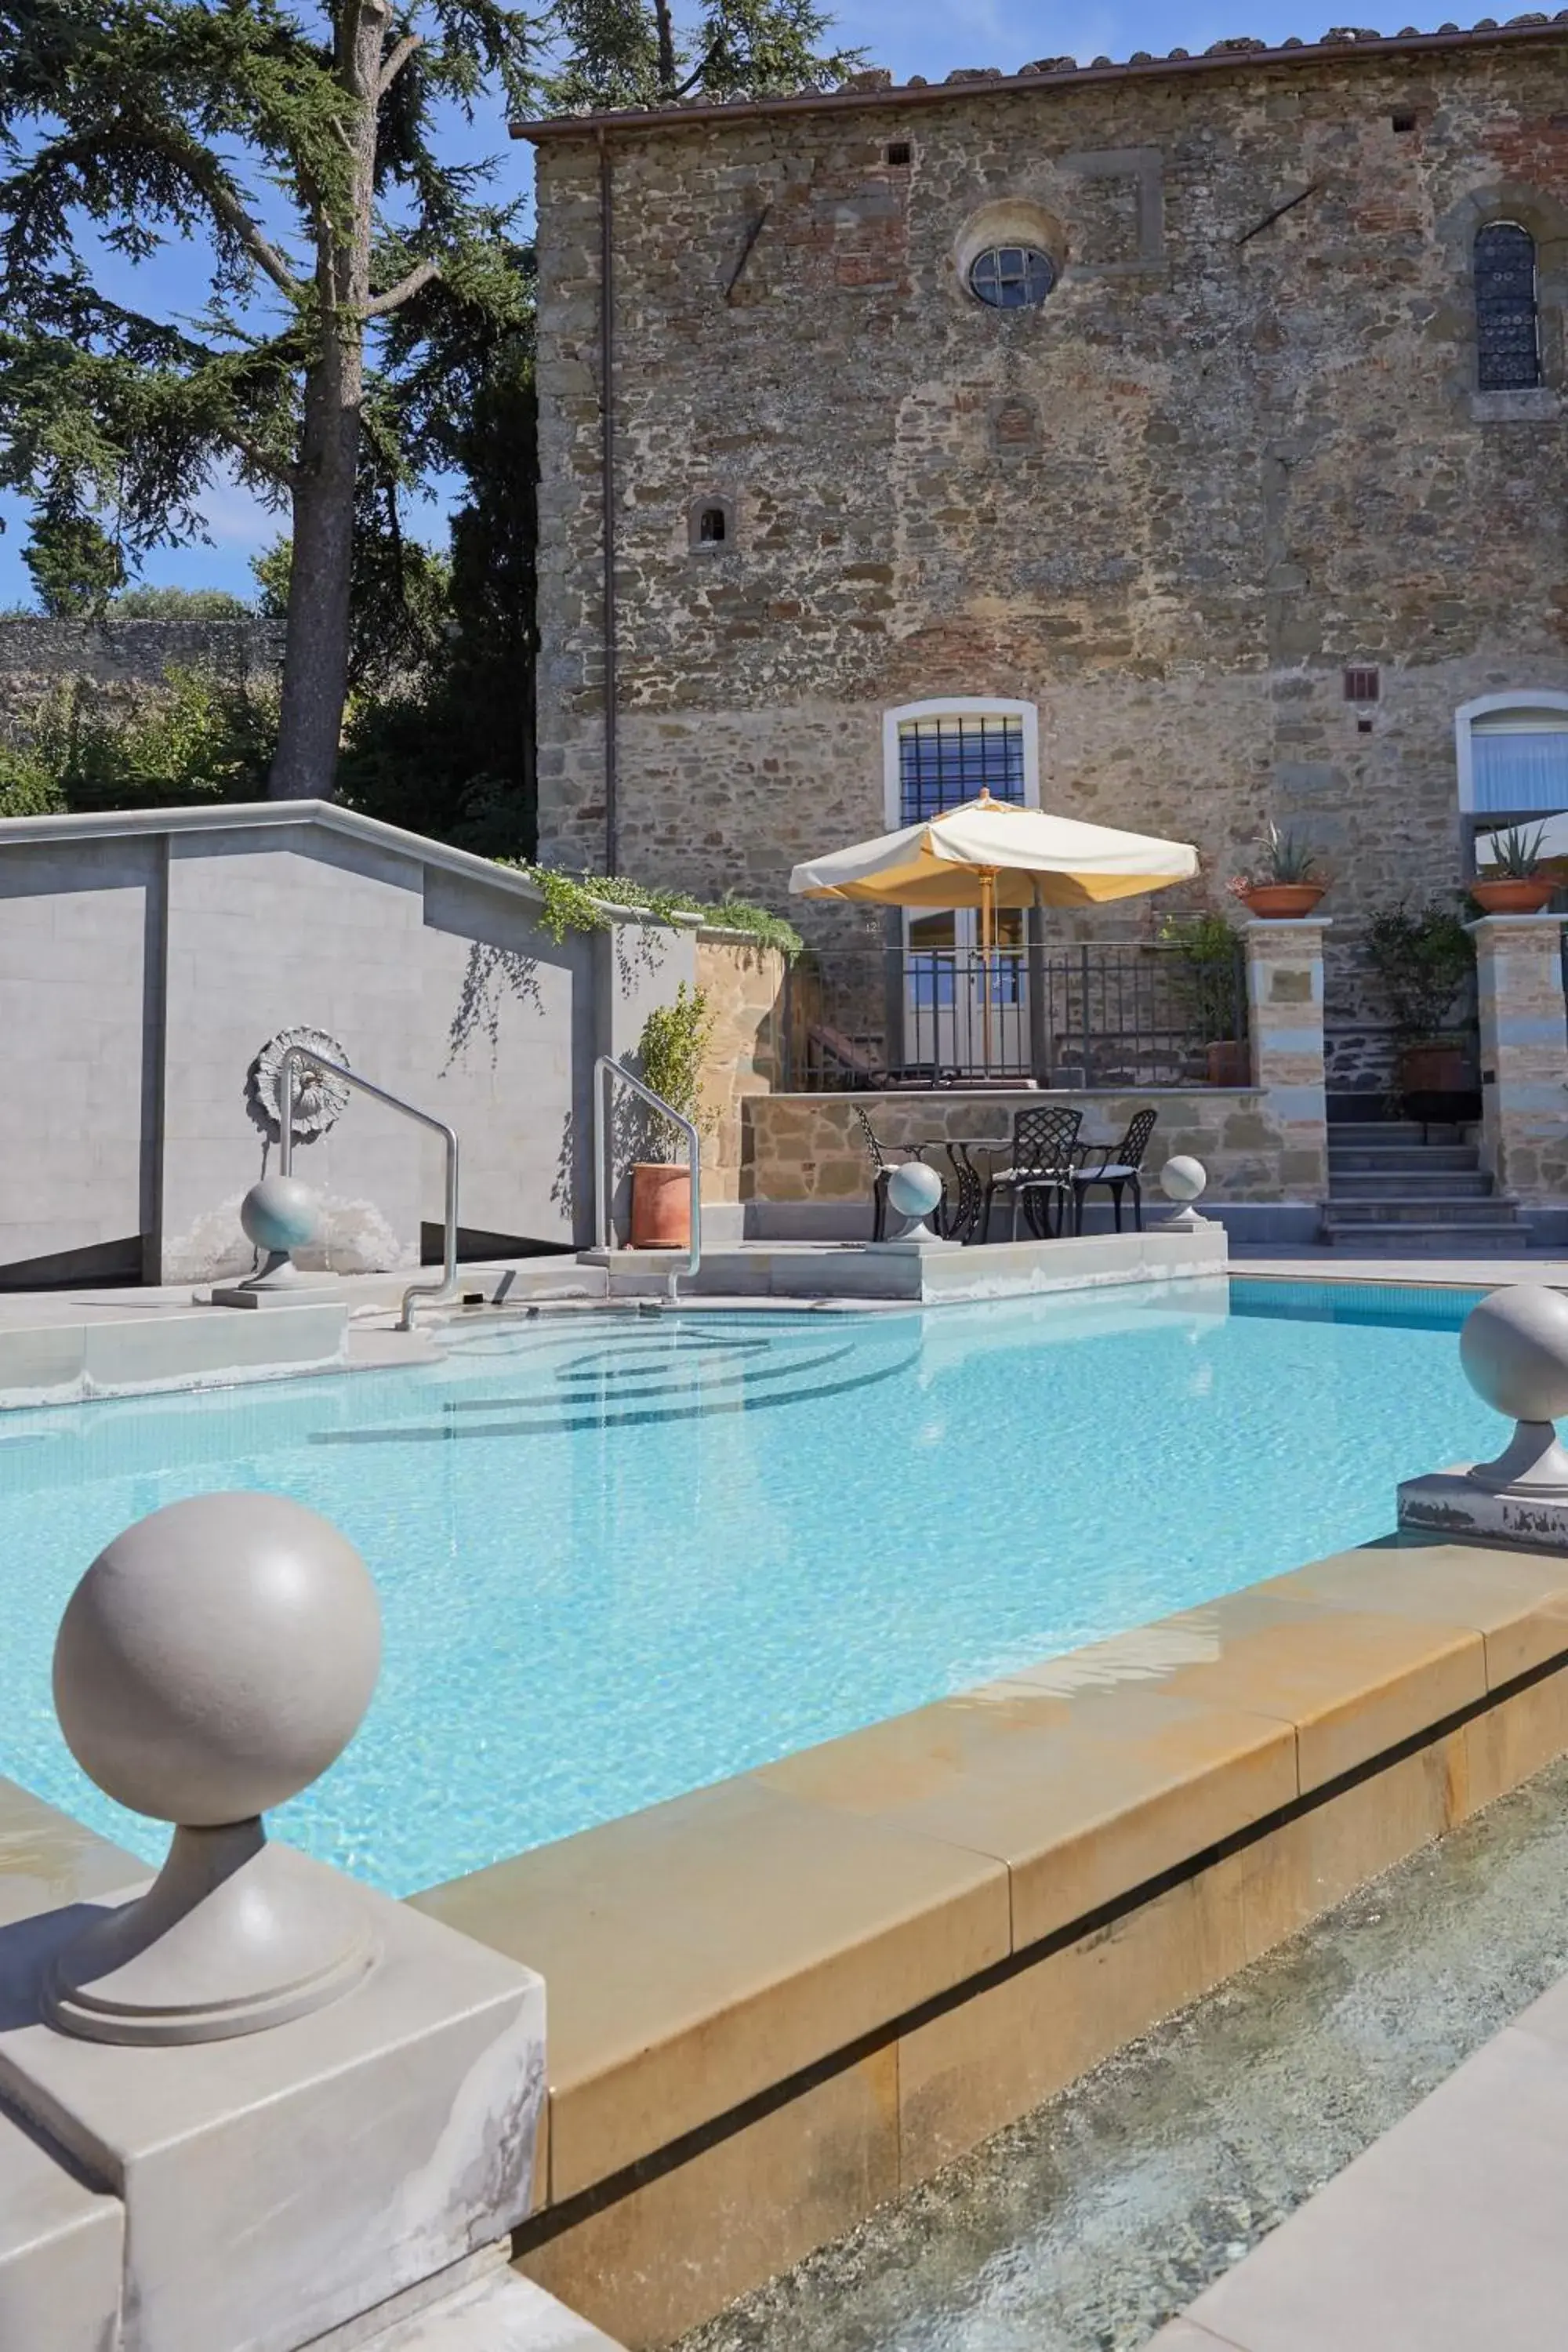 Property building, Swimming Pool in Monastero Di Cortona Hotel & Spa